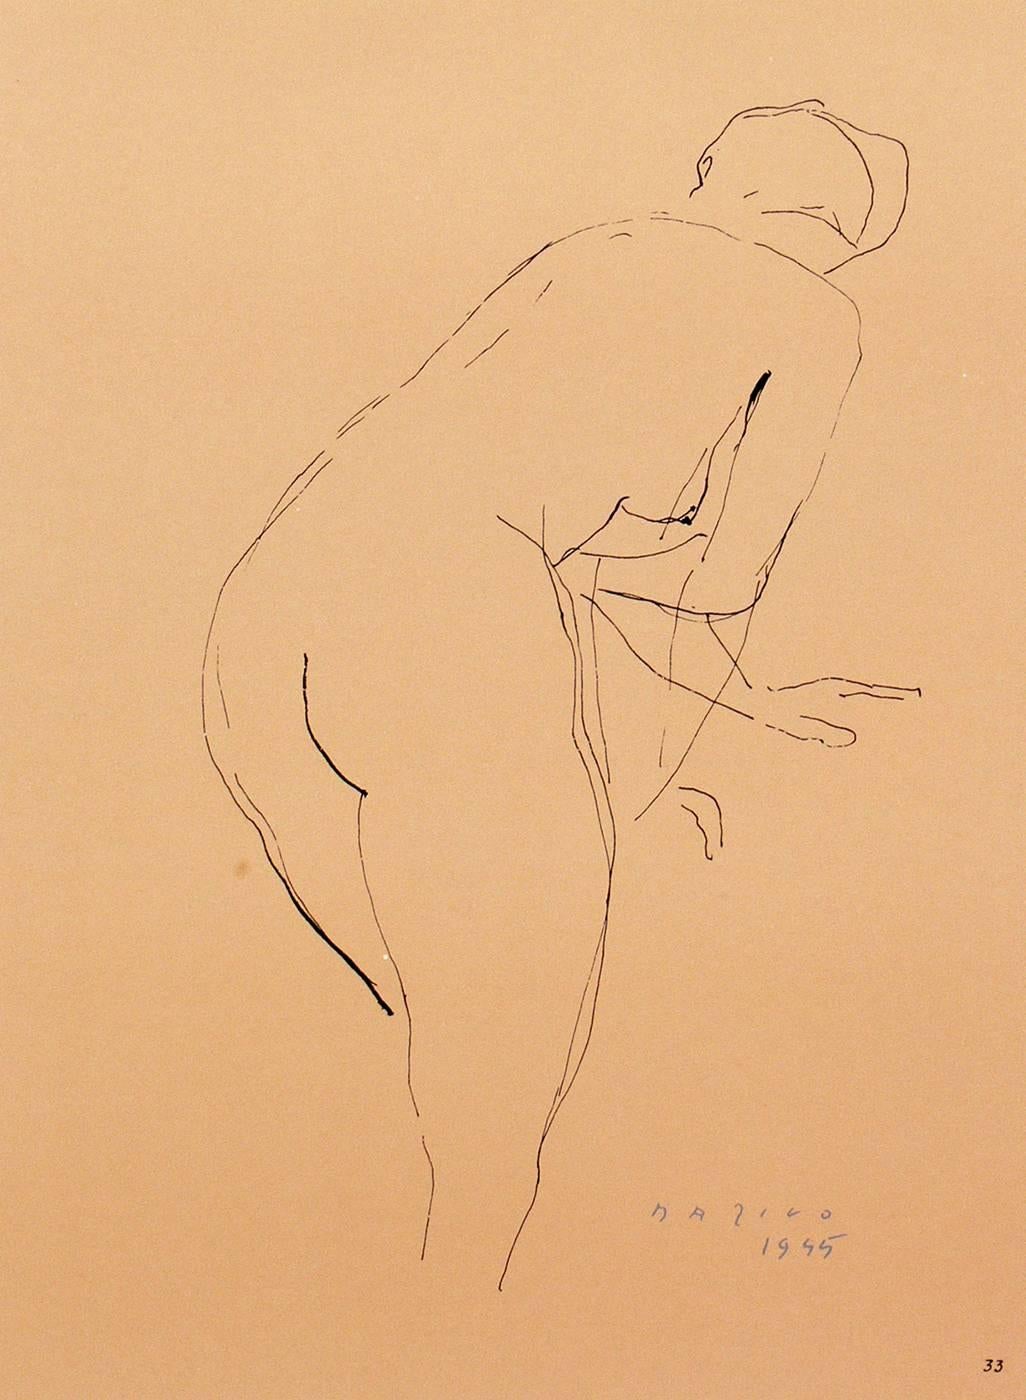 Zwei Lithografien von Marino Marini mit weiblichem Akt, aus der Mappe Marino Marini, gedruckt bei Carl Schünemann, Deutschland, um 1968. Sie wurden in saubere, schwarz lackierte Galerierahmen gerahmt